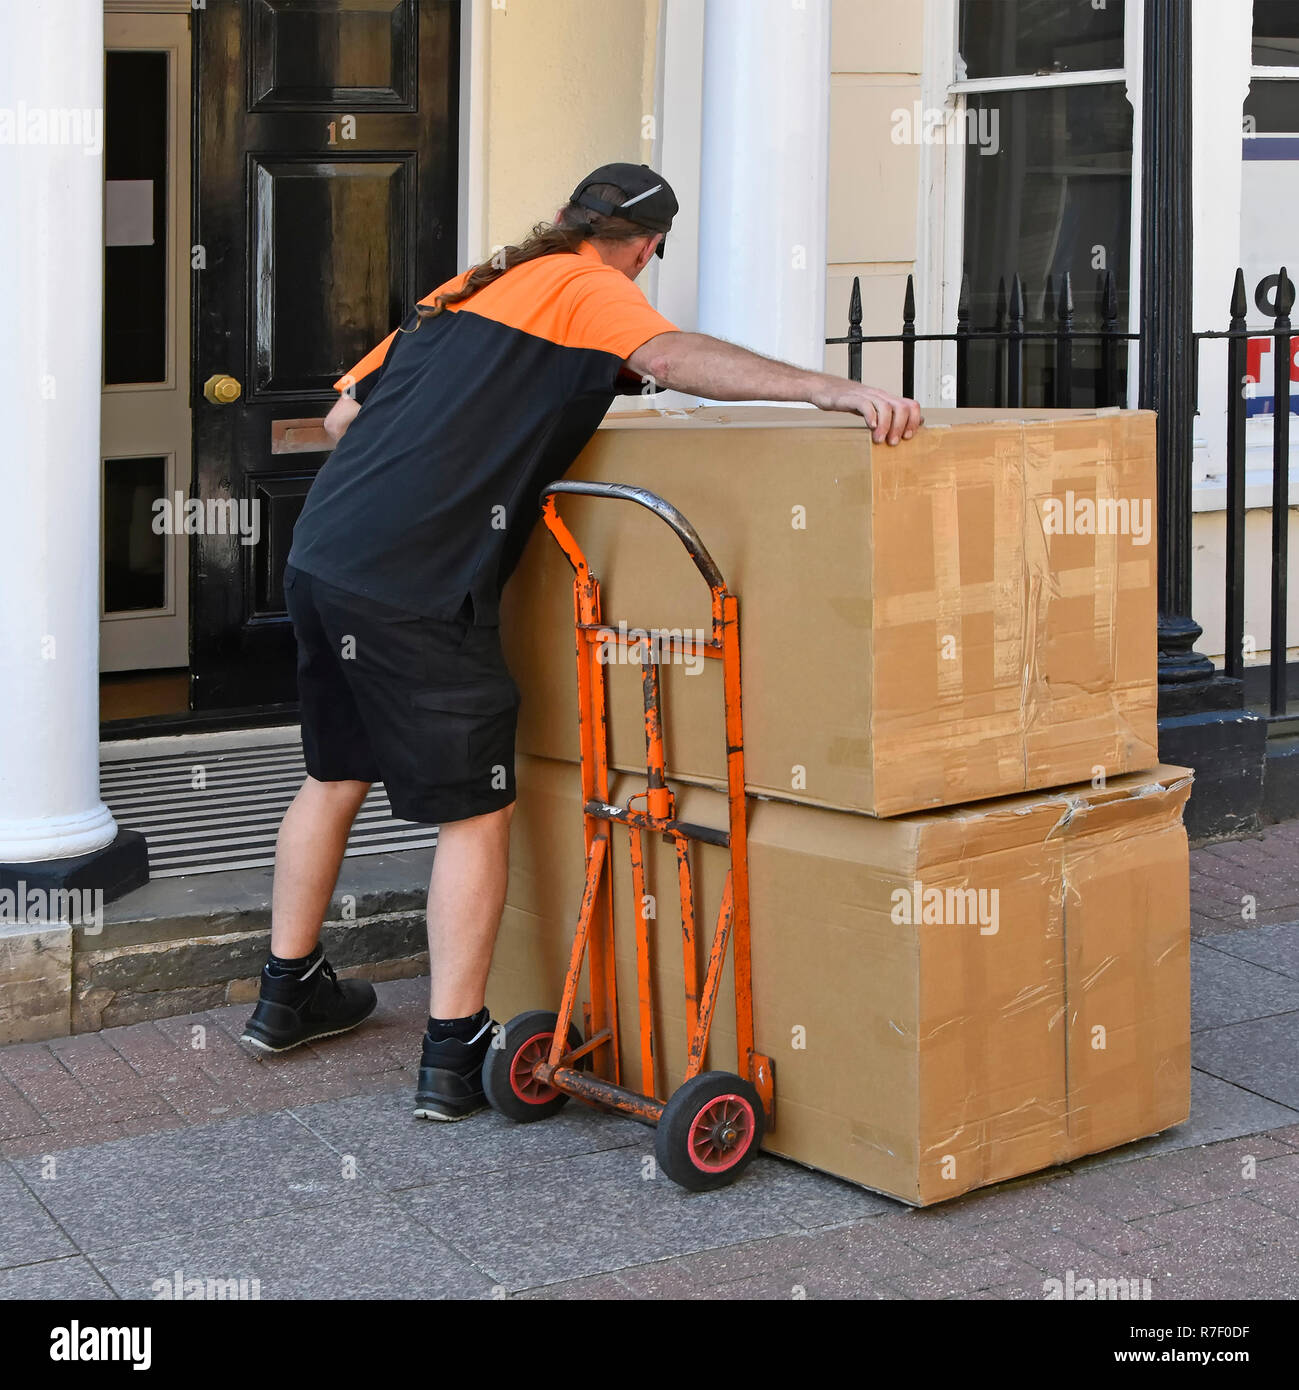 Mann bei der Arbeit als Paket TNT Anlieferung Treiber anheben Karton von Trolley auf engen Eingang, Southend-on-Sea Essex England Großbritannien zu liefern Stockfoto